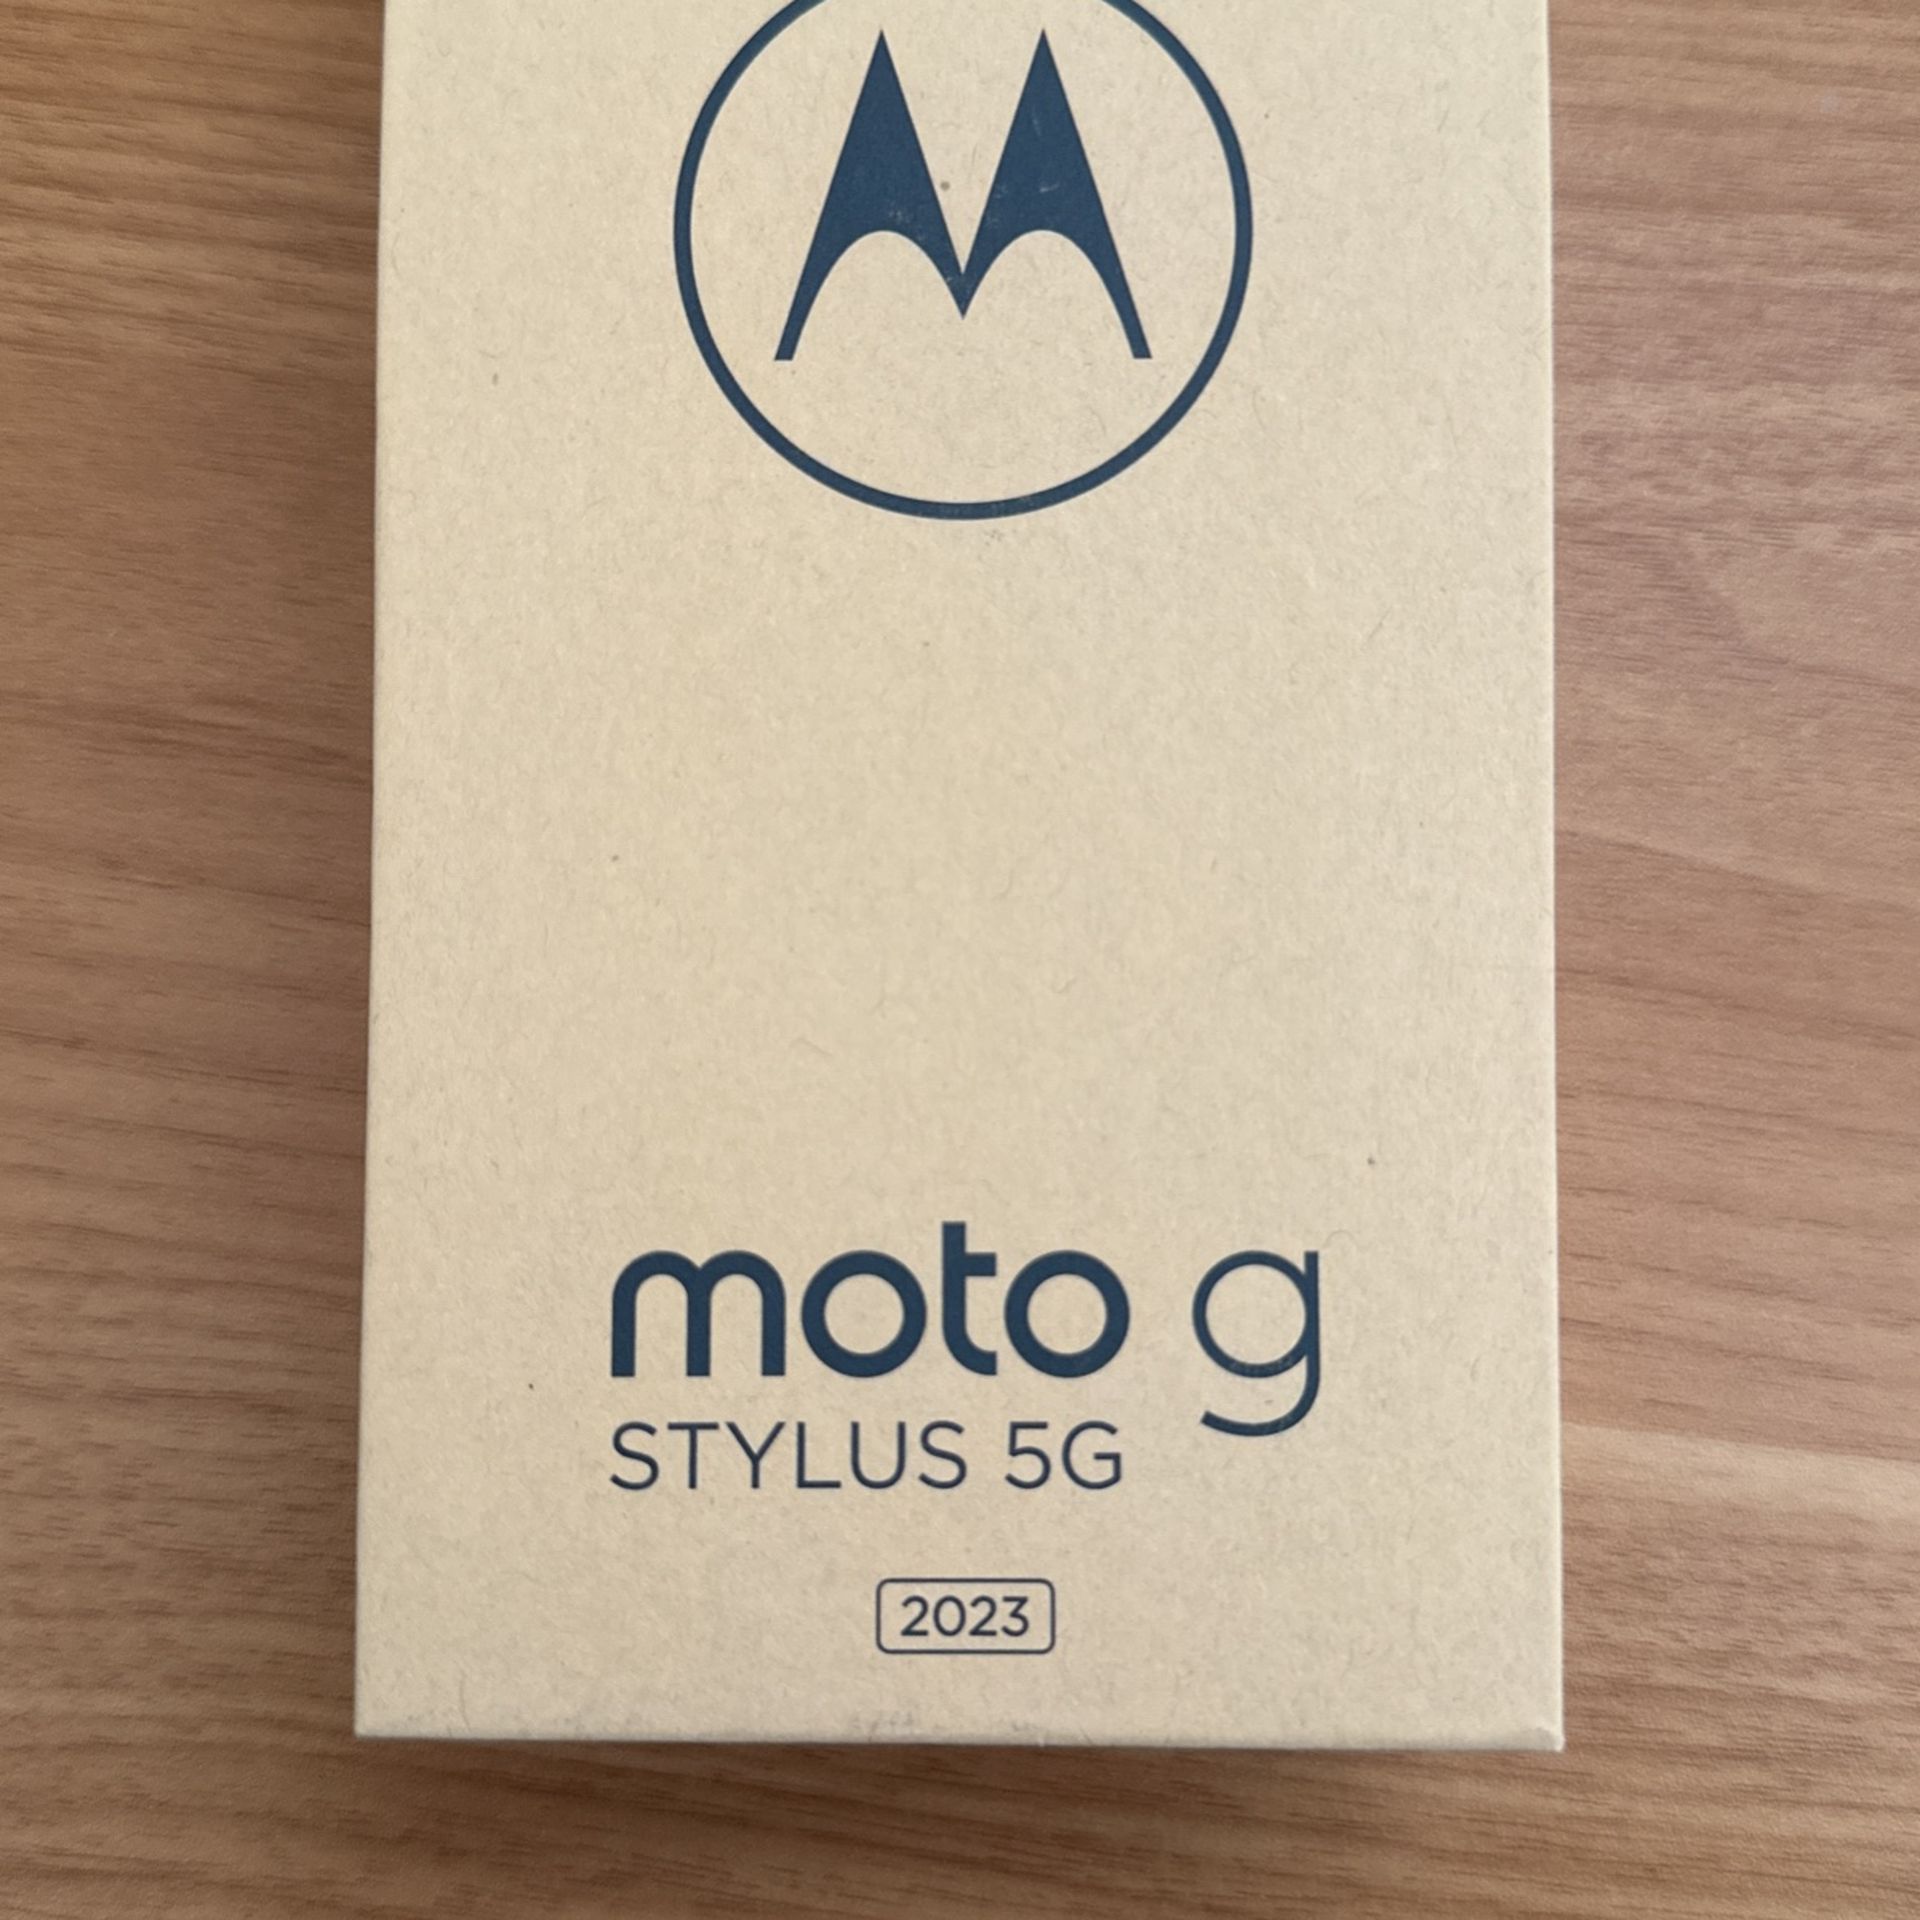 Motorola Stylus 5G 128GB Black 2023 Model, New, Sealed